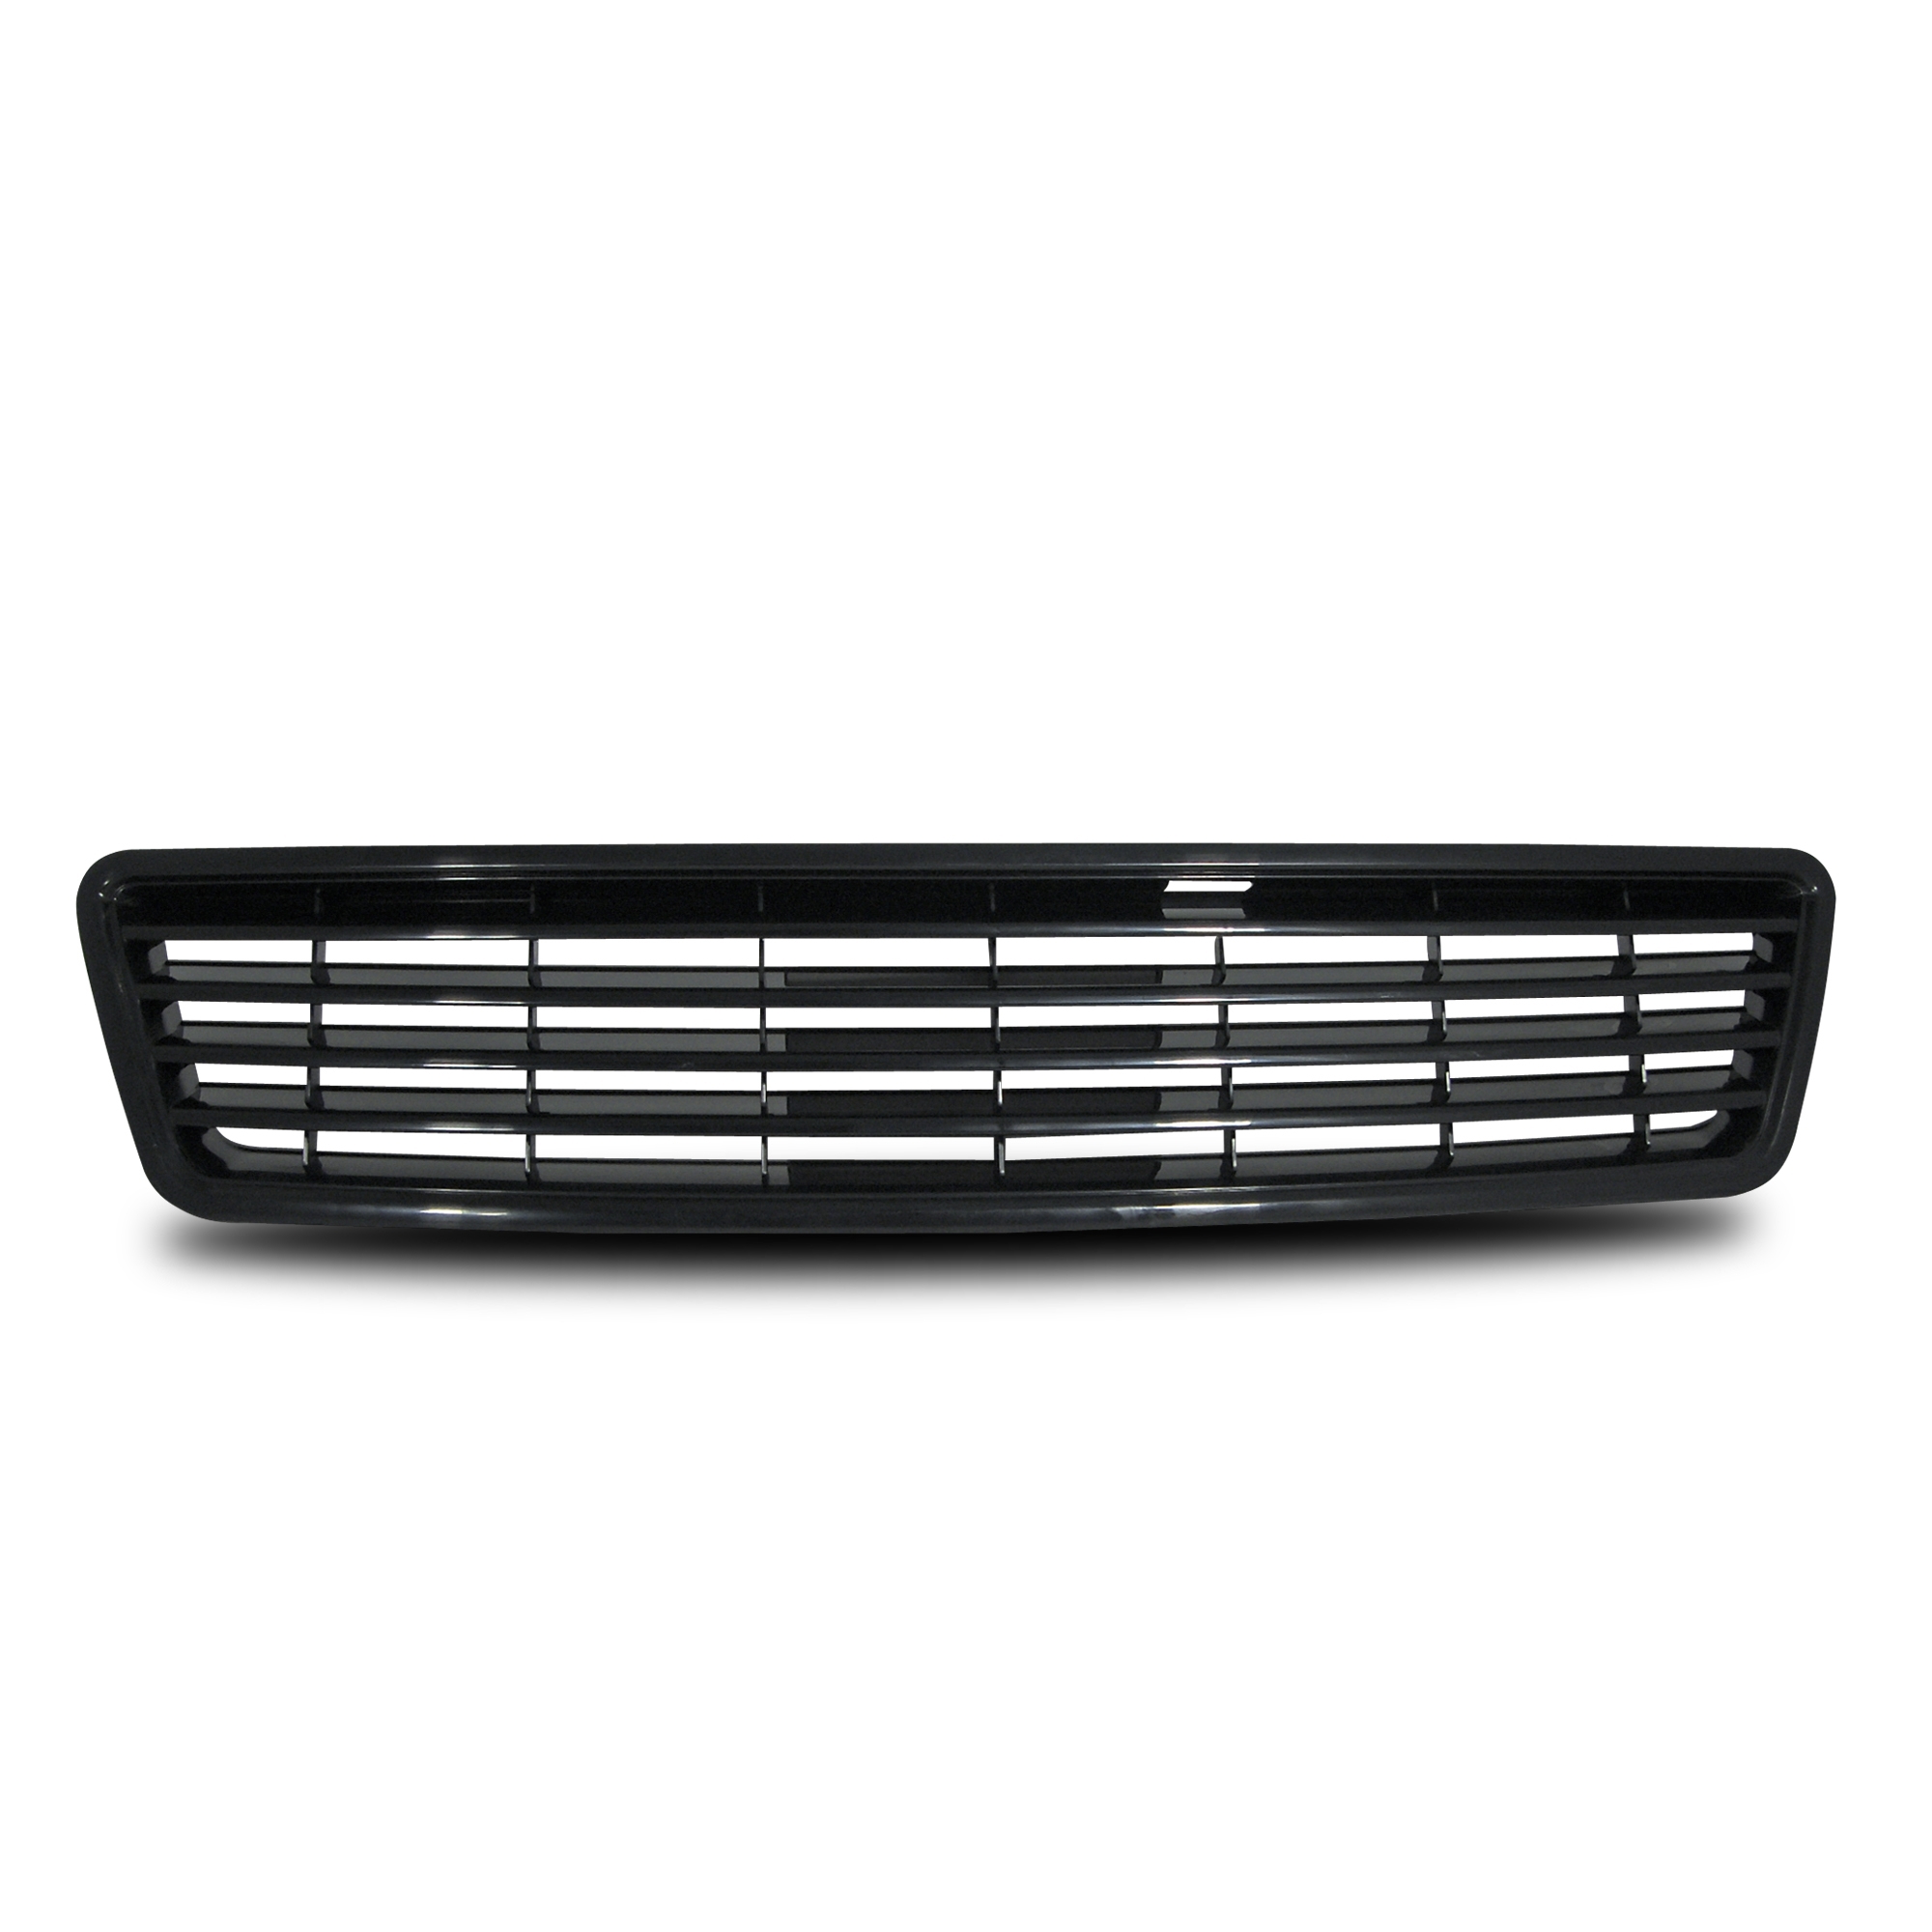 Kühlergrill ohne Emblem, schwarz passend für Audi A6 Baujahr